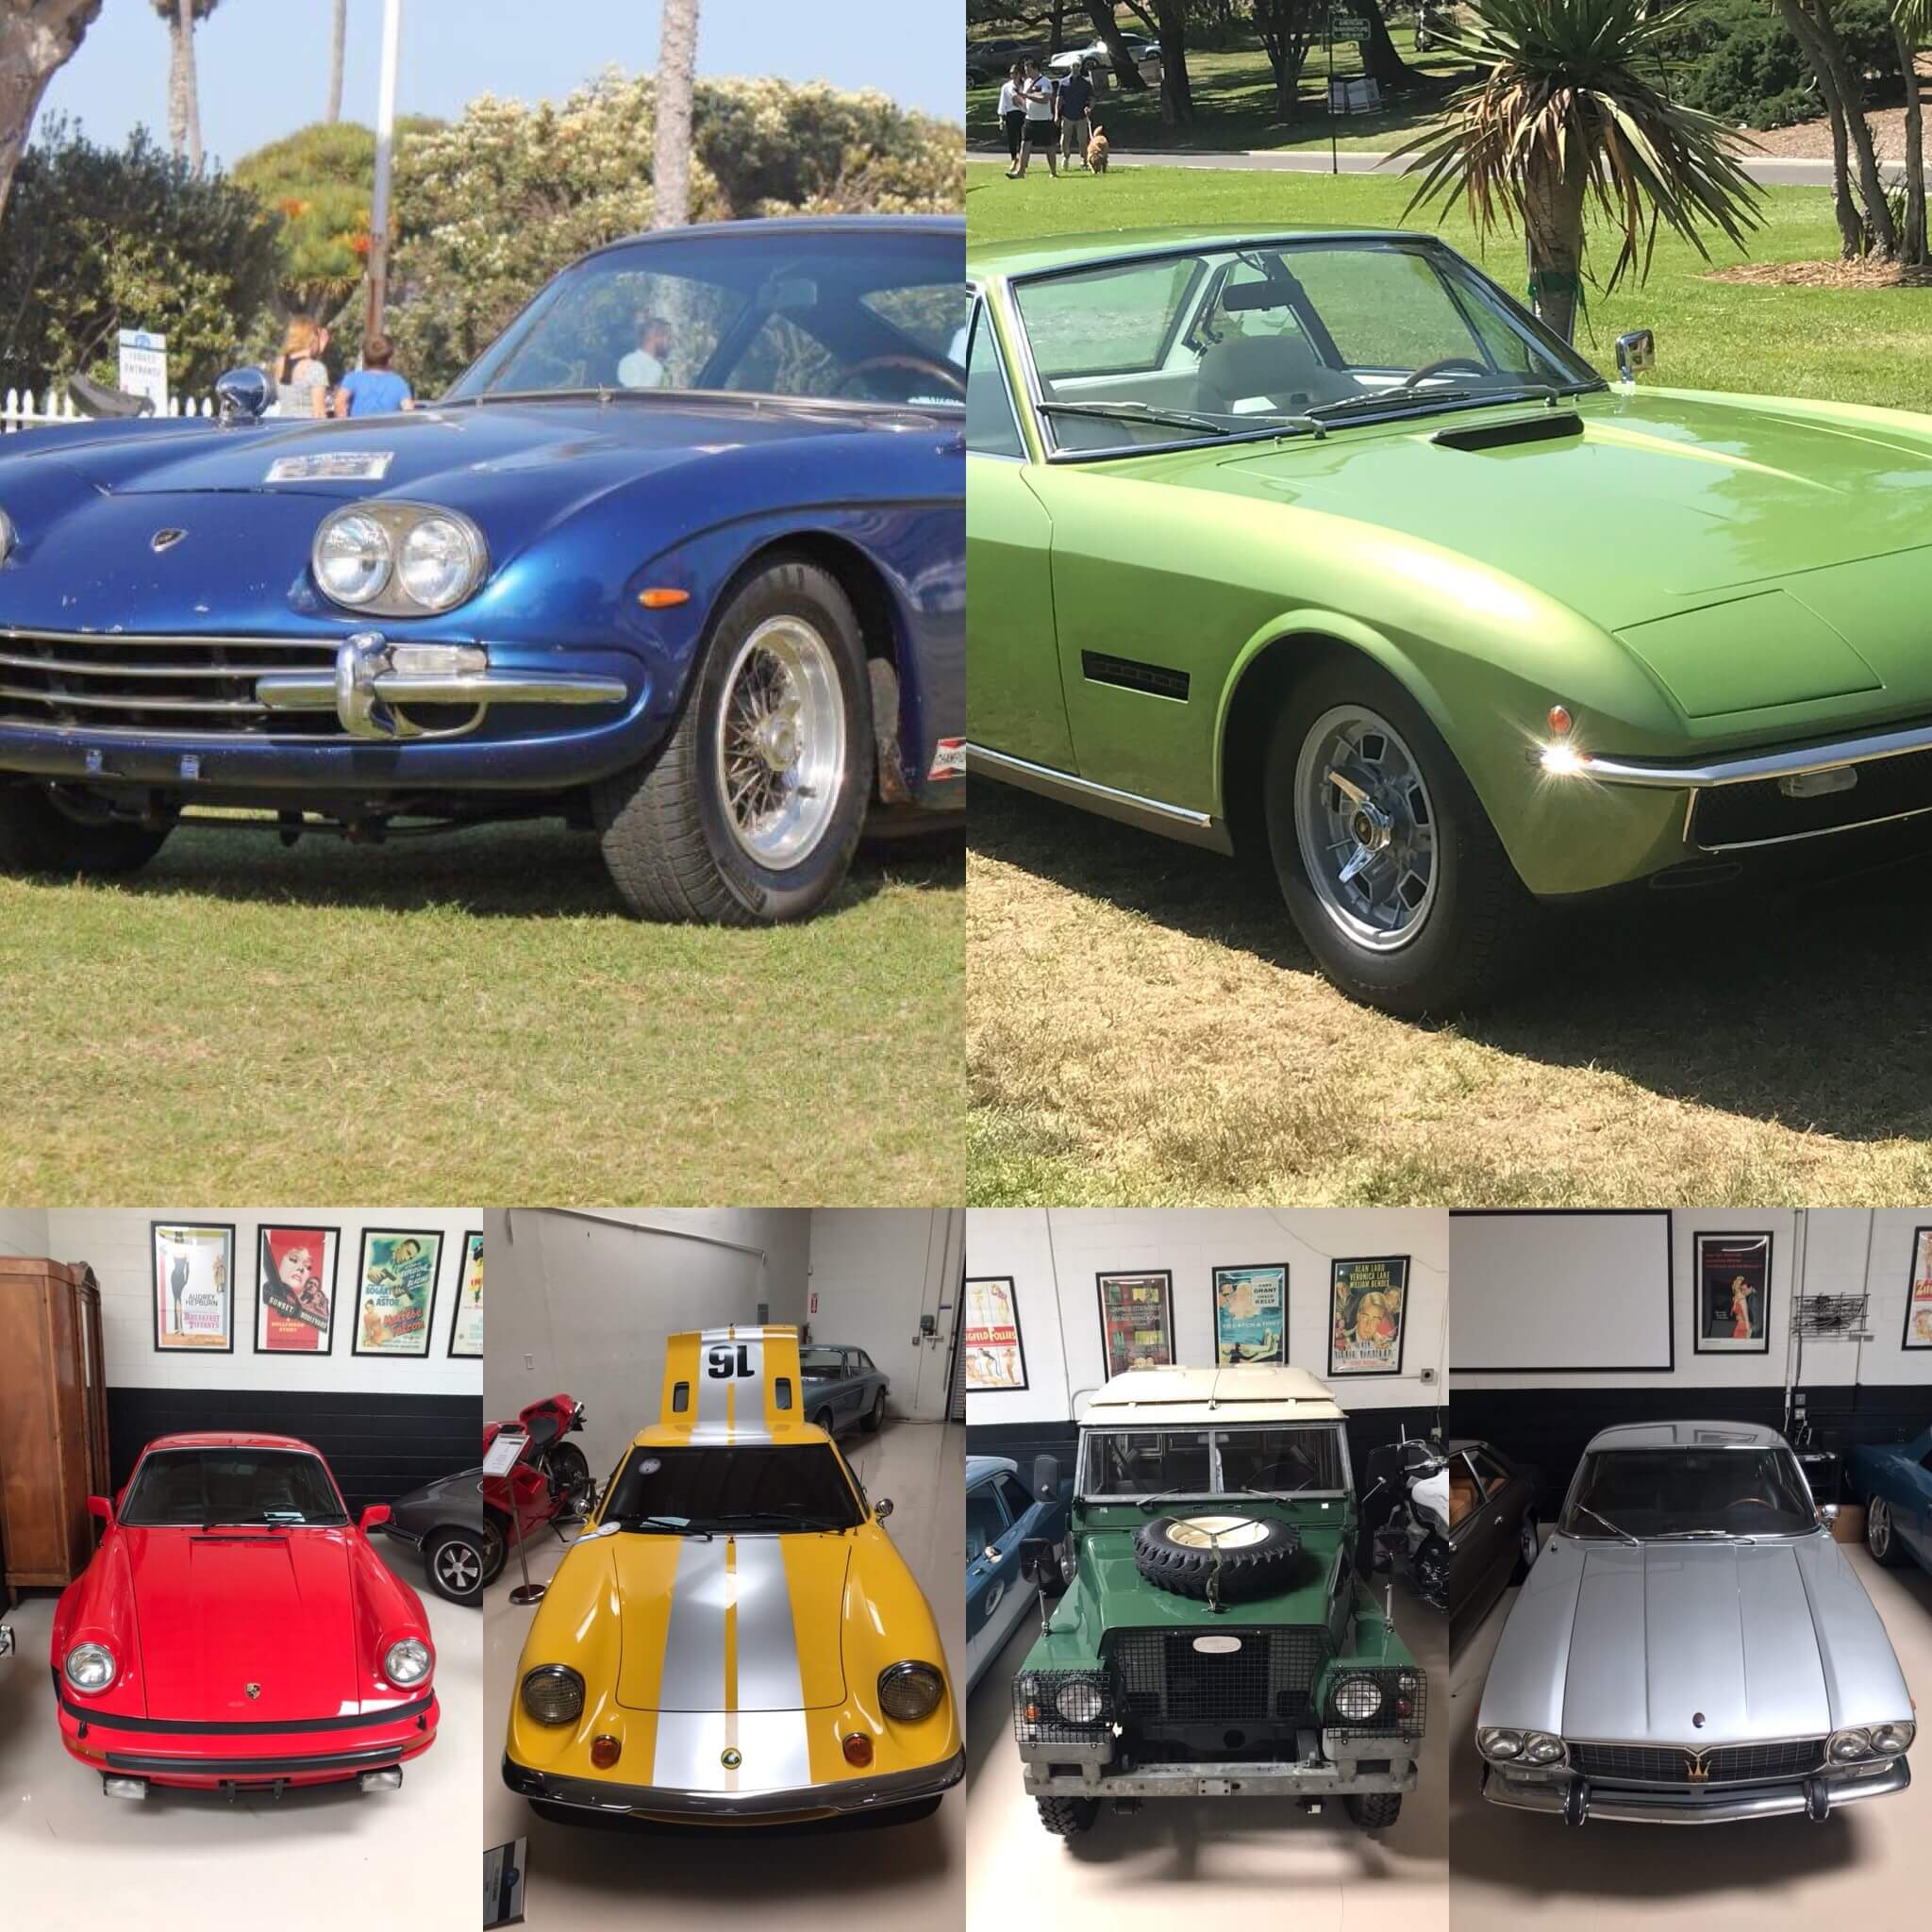 Collage of 1969 Lamborghini Islero S, 1966 Lamborghini 400, 1978 Landover Series 3, 1979 Porsche 930 Turbo, 1973 Lotus Europa, 1967 Maserati Mexico